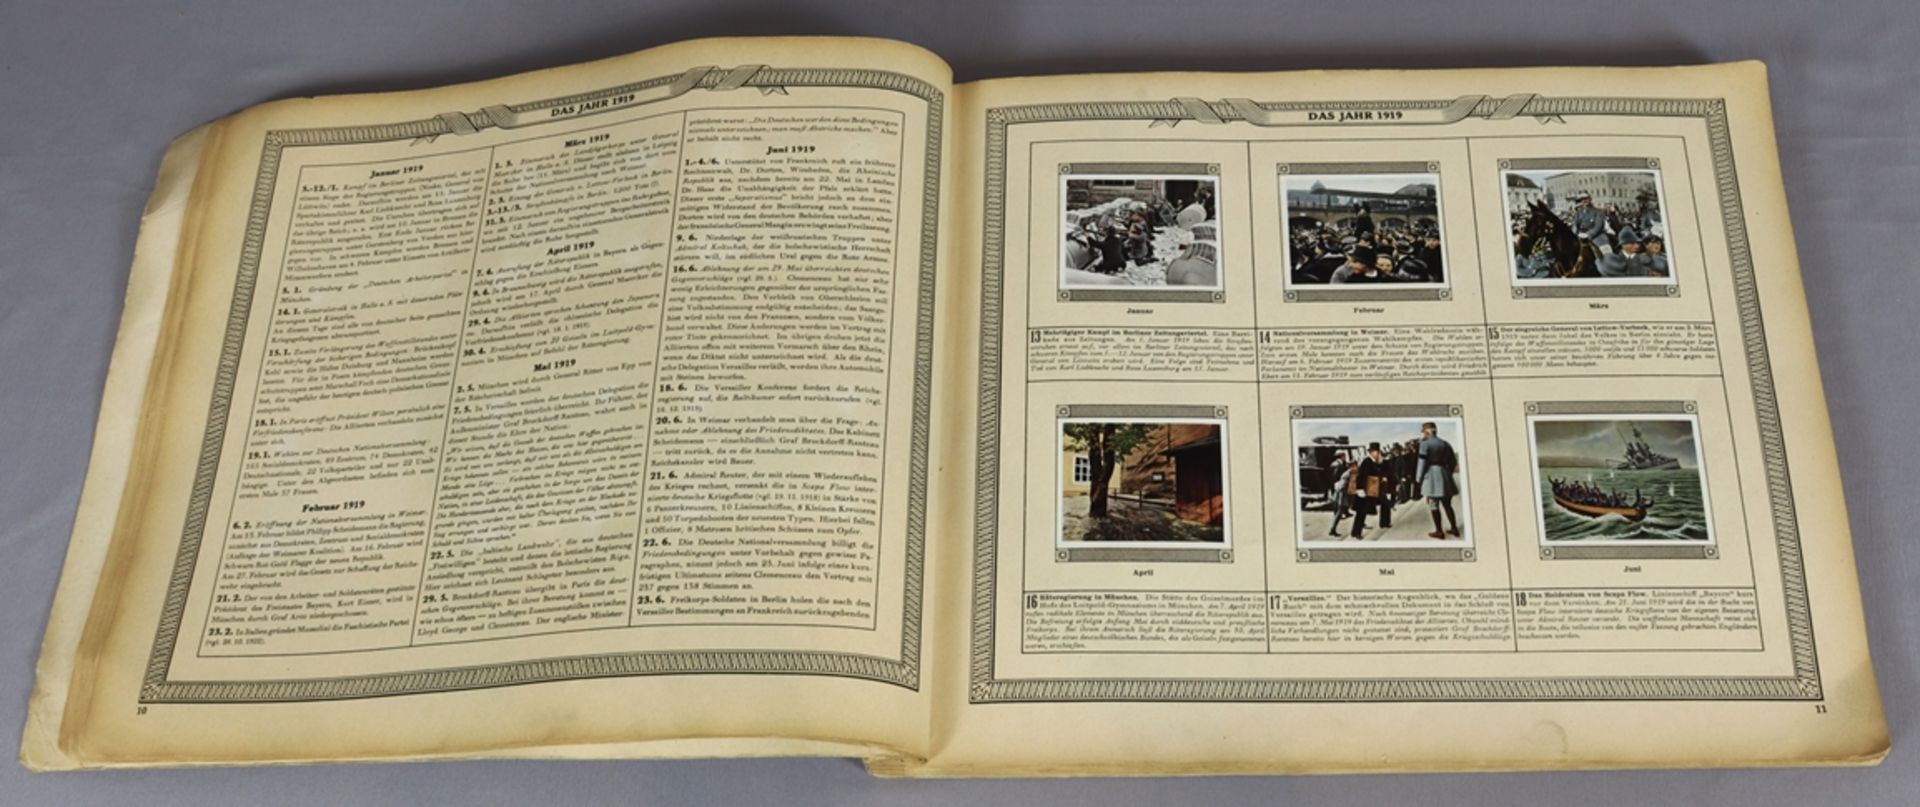 Collector's albums, Bismarck 1815 - 1915 u. Nachkriegszeiten 1918 - 1934 - Image 6 of 7